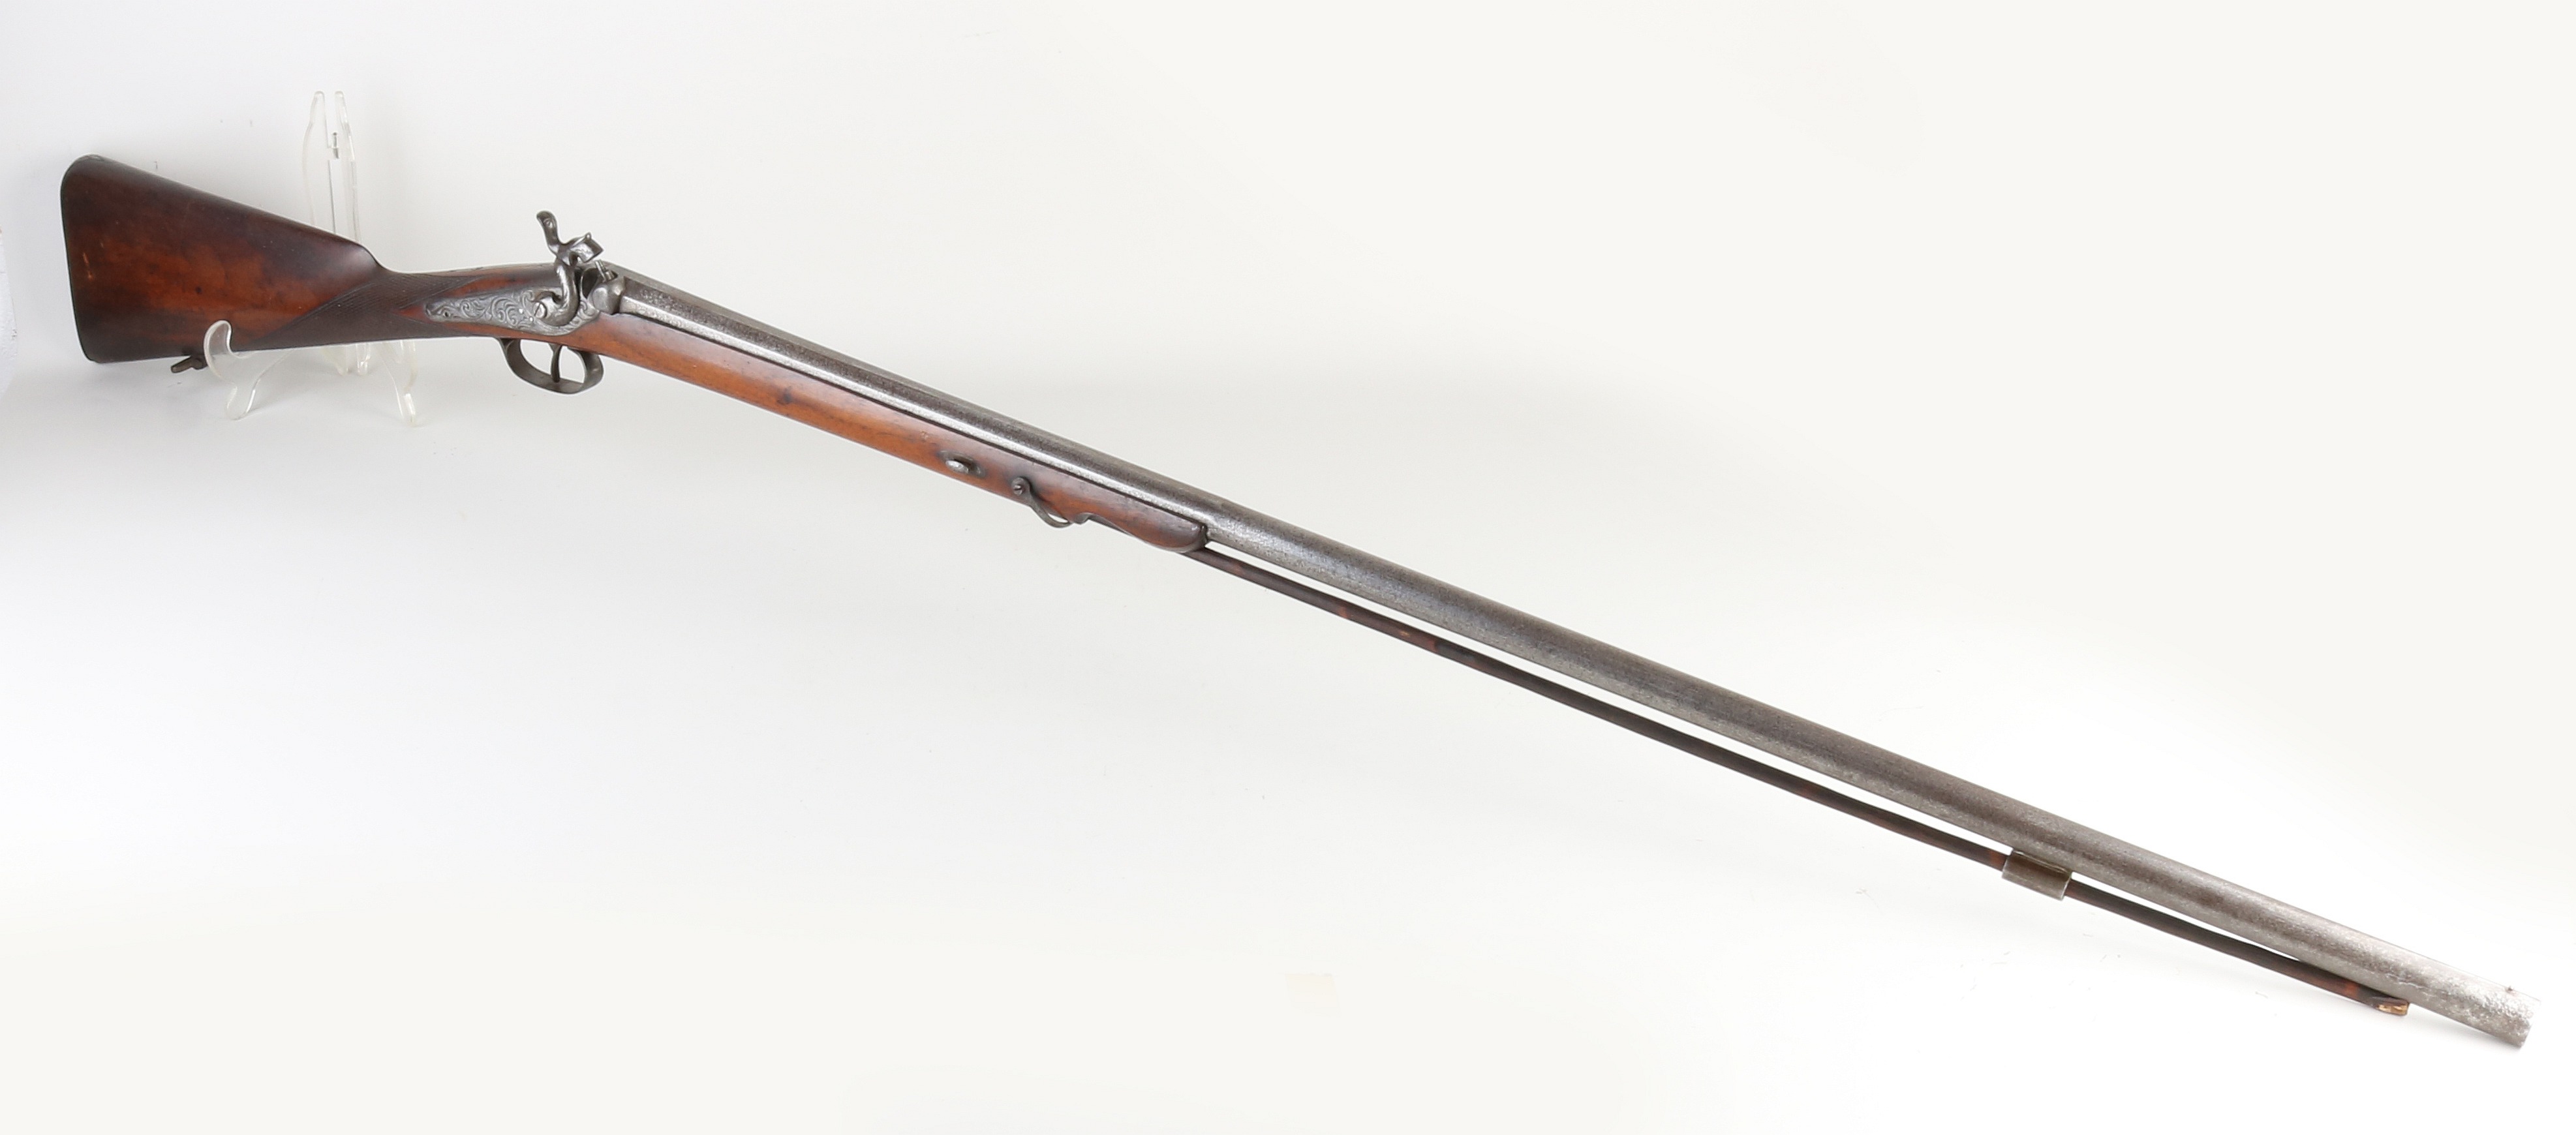 Lang enkelloops geweer, L 141 cm.